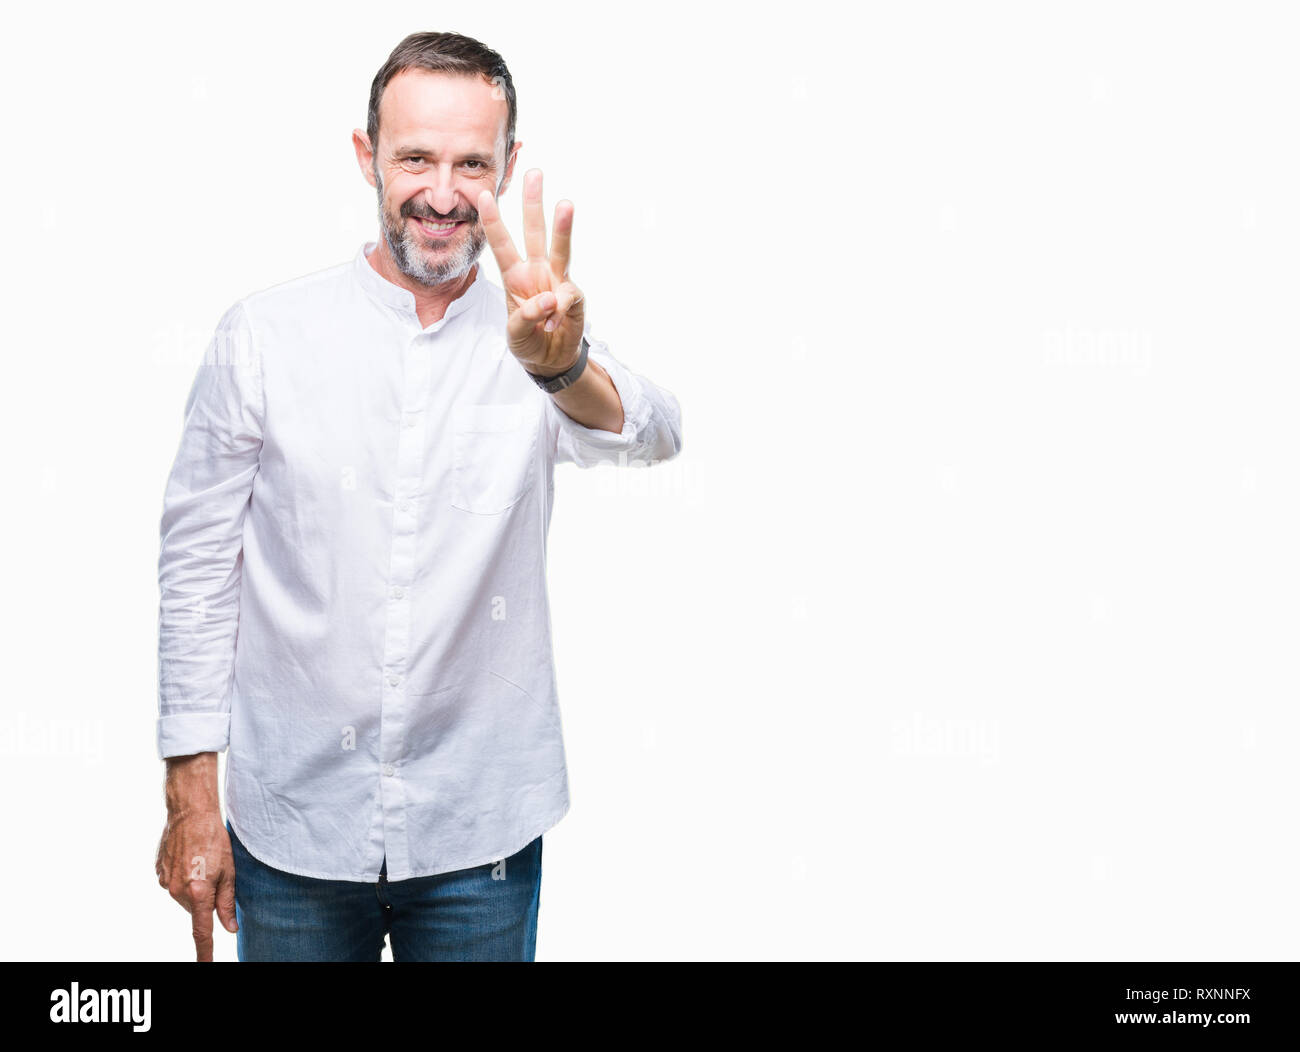 Mittleres Alter hoary älterer Mann über isolierte Hintergrund angezeigt und zeigen mit den Fingern Nummer drei, während lächelte zuversichtlich und fröhlich. Stockfoto